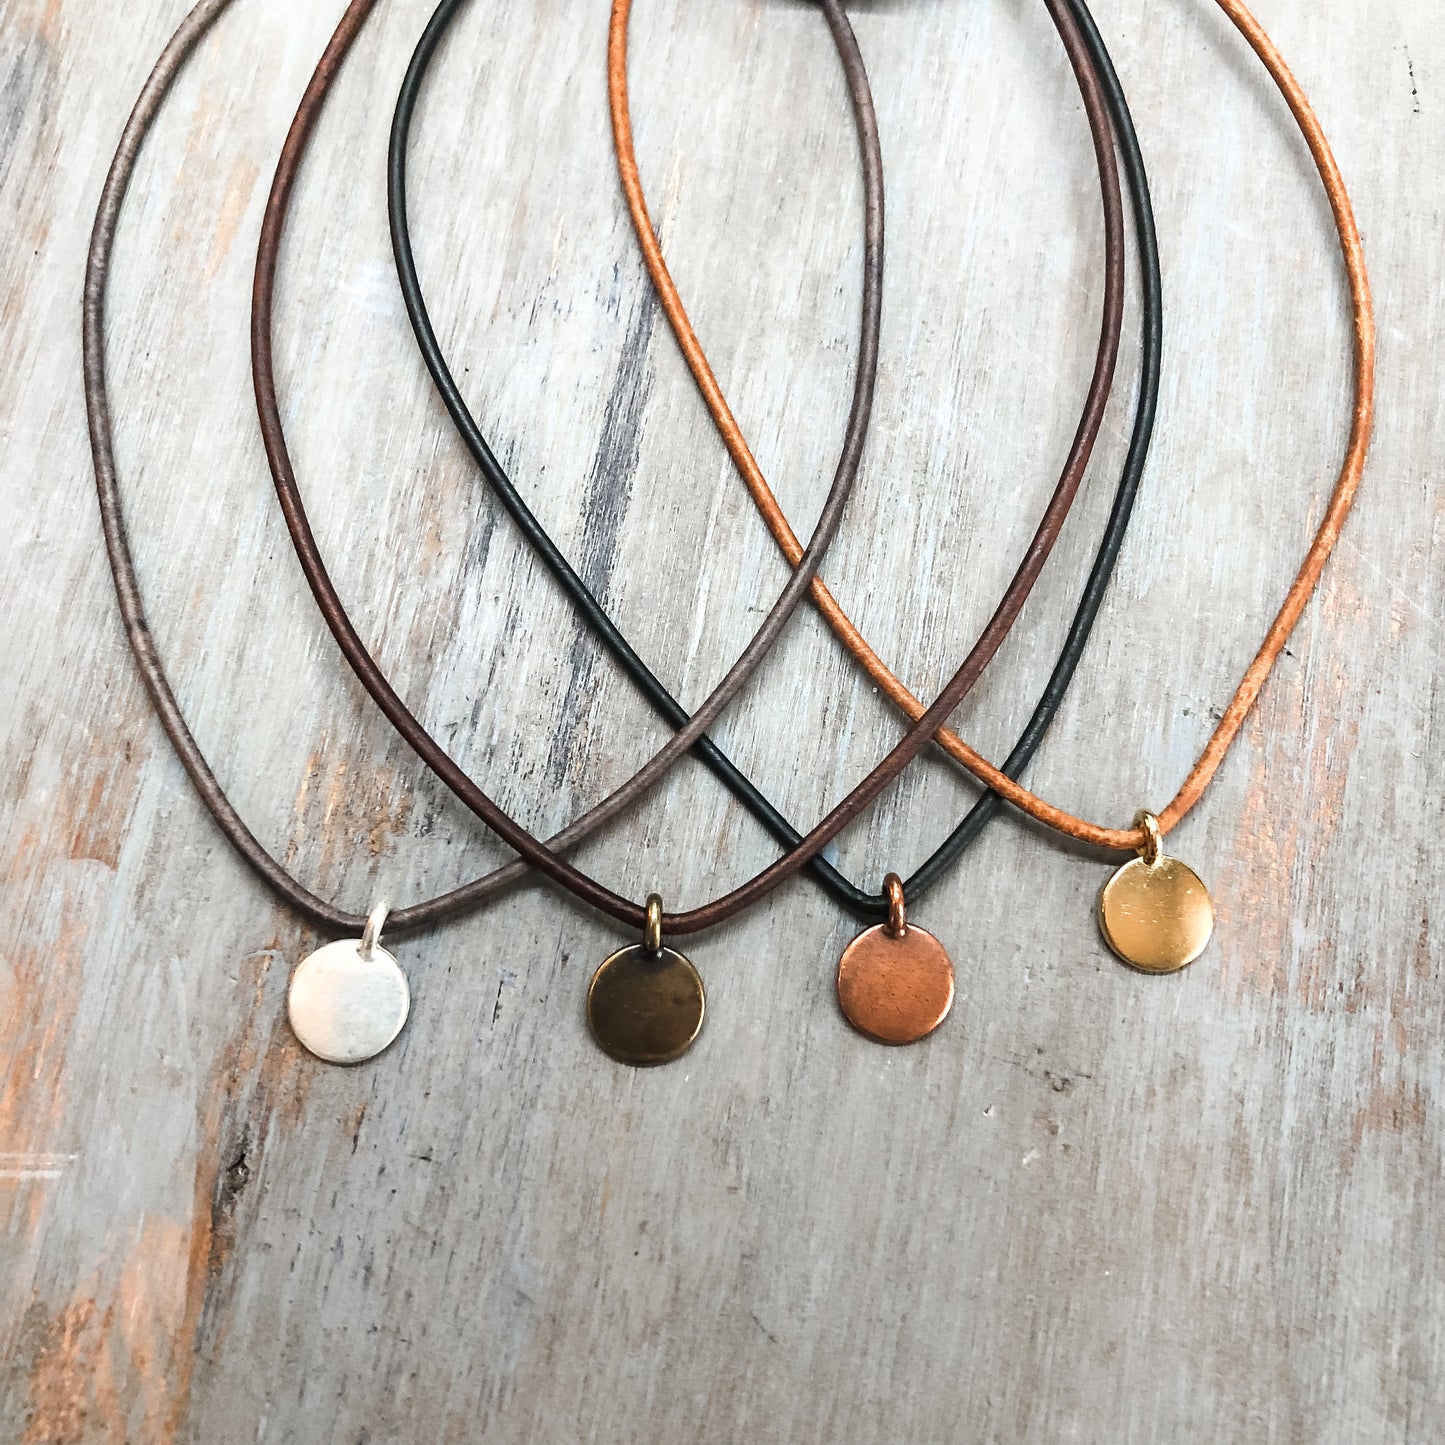 Leather cord necklace for women men | Pendant necklace for him and her | Boho leather necklace | Layering pendant necklace